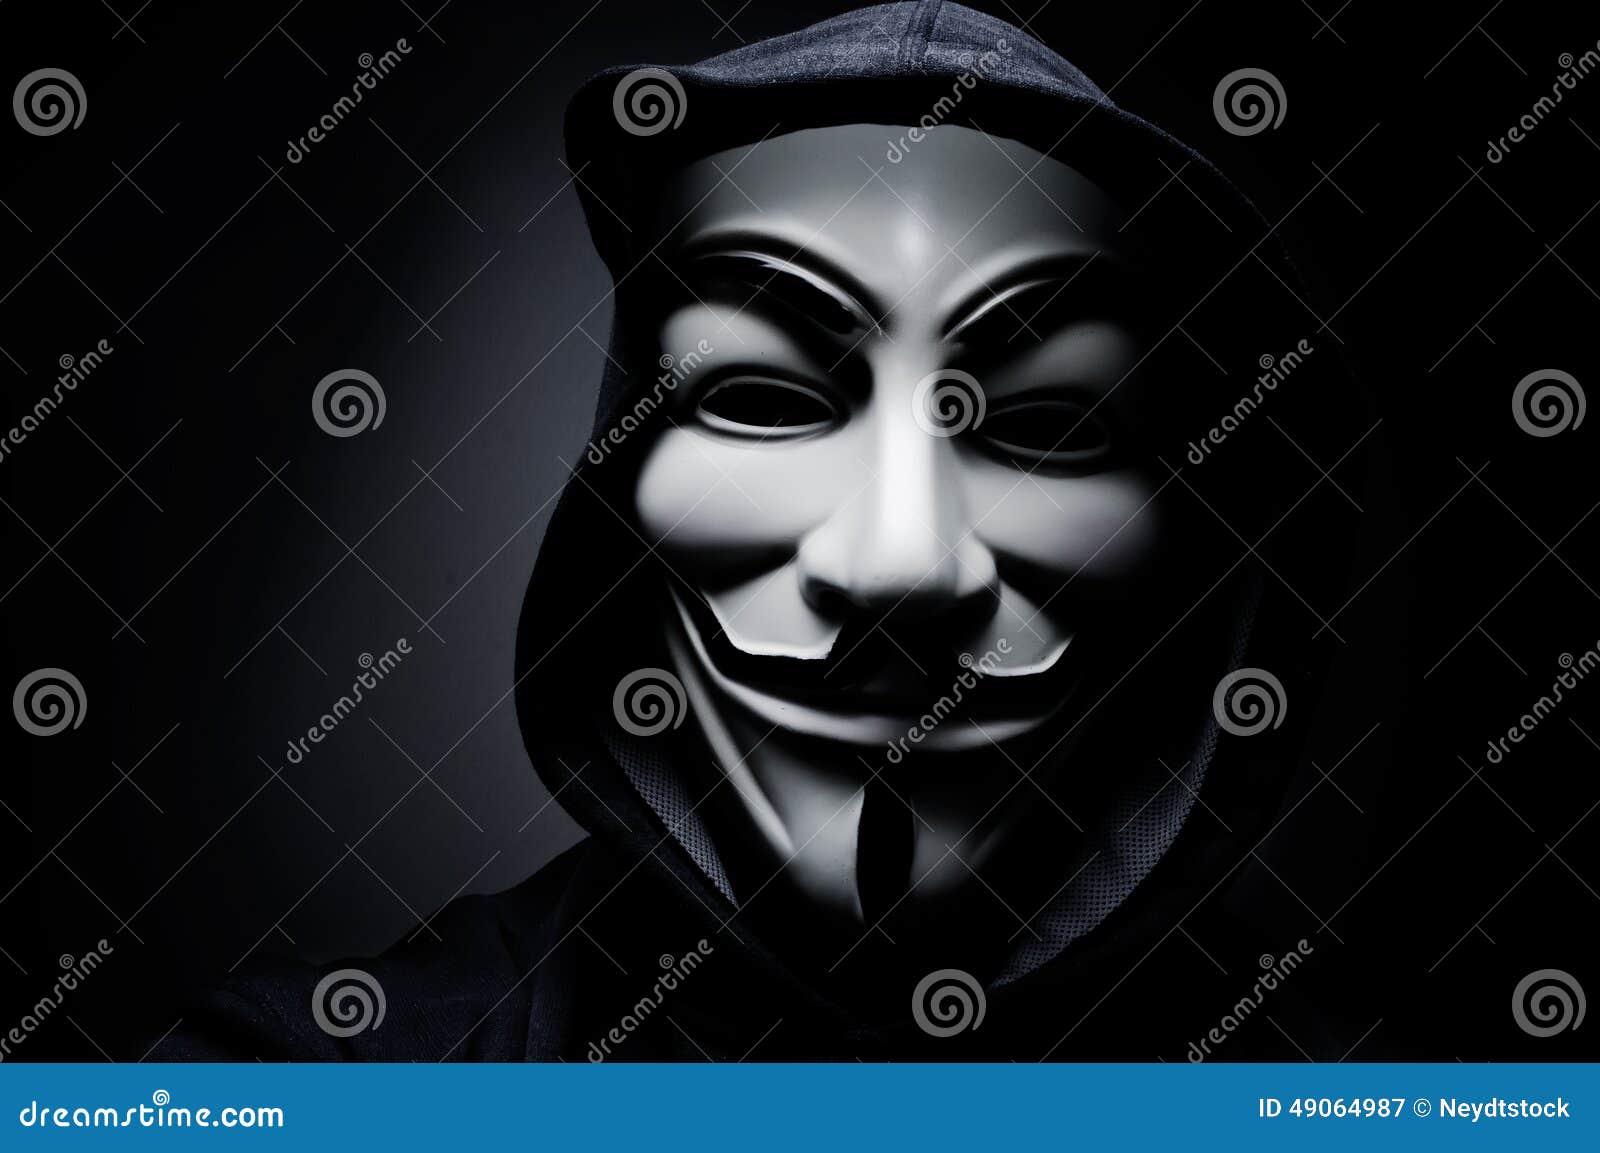 <b>...</b> <b>on-line</b>--hacktivist Gruppe eingelassenes Paris - Frankreich das am 17. - foto-mann-der-tragenden-vendettamaske-diese-maske-ist-ein-weithin-bekanntes-symbol-f%25C3%25BCr-die-anonyme-line-hacktivist-gruppe-49064987